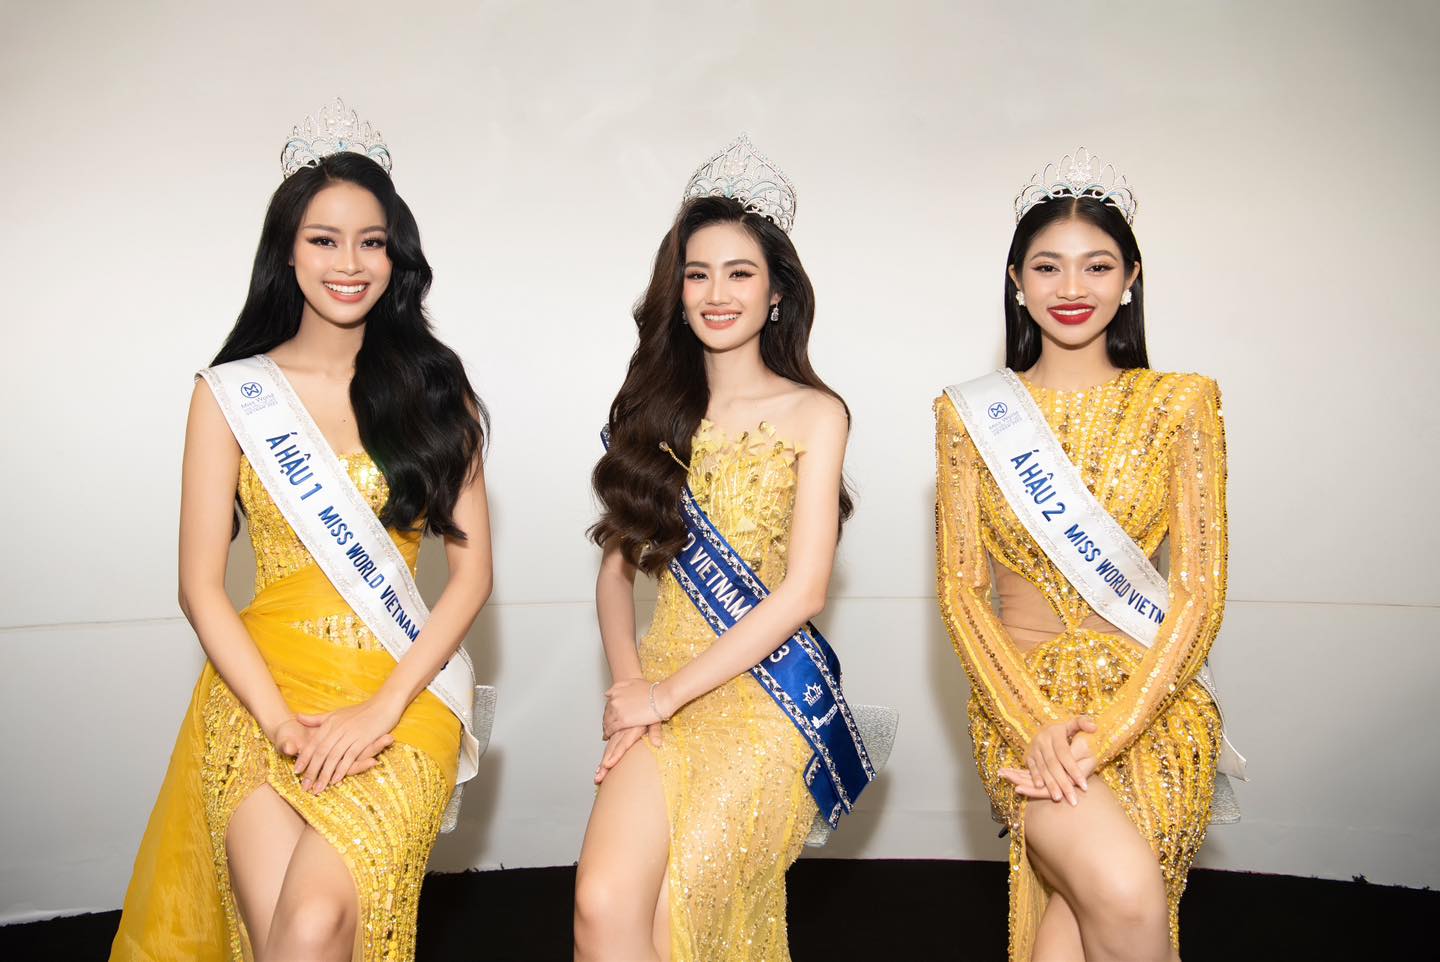 'Cha đẻ' của cuộc thi Hoa hậu Việt Nam: 'Tước vương miện thì hơi nặng nề với Ý Nhi' - ảnh 2